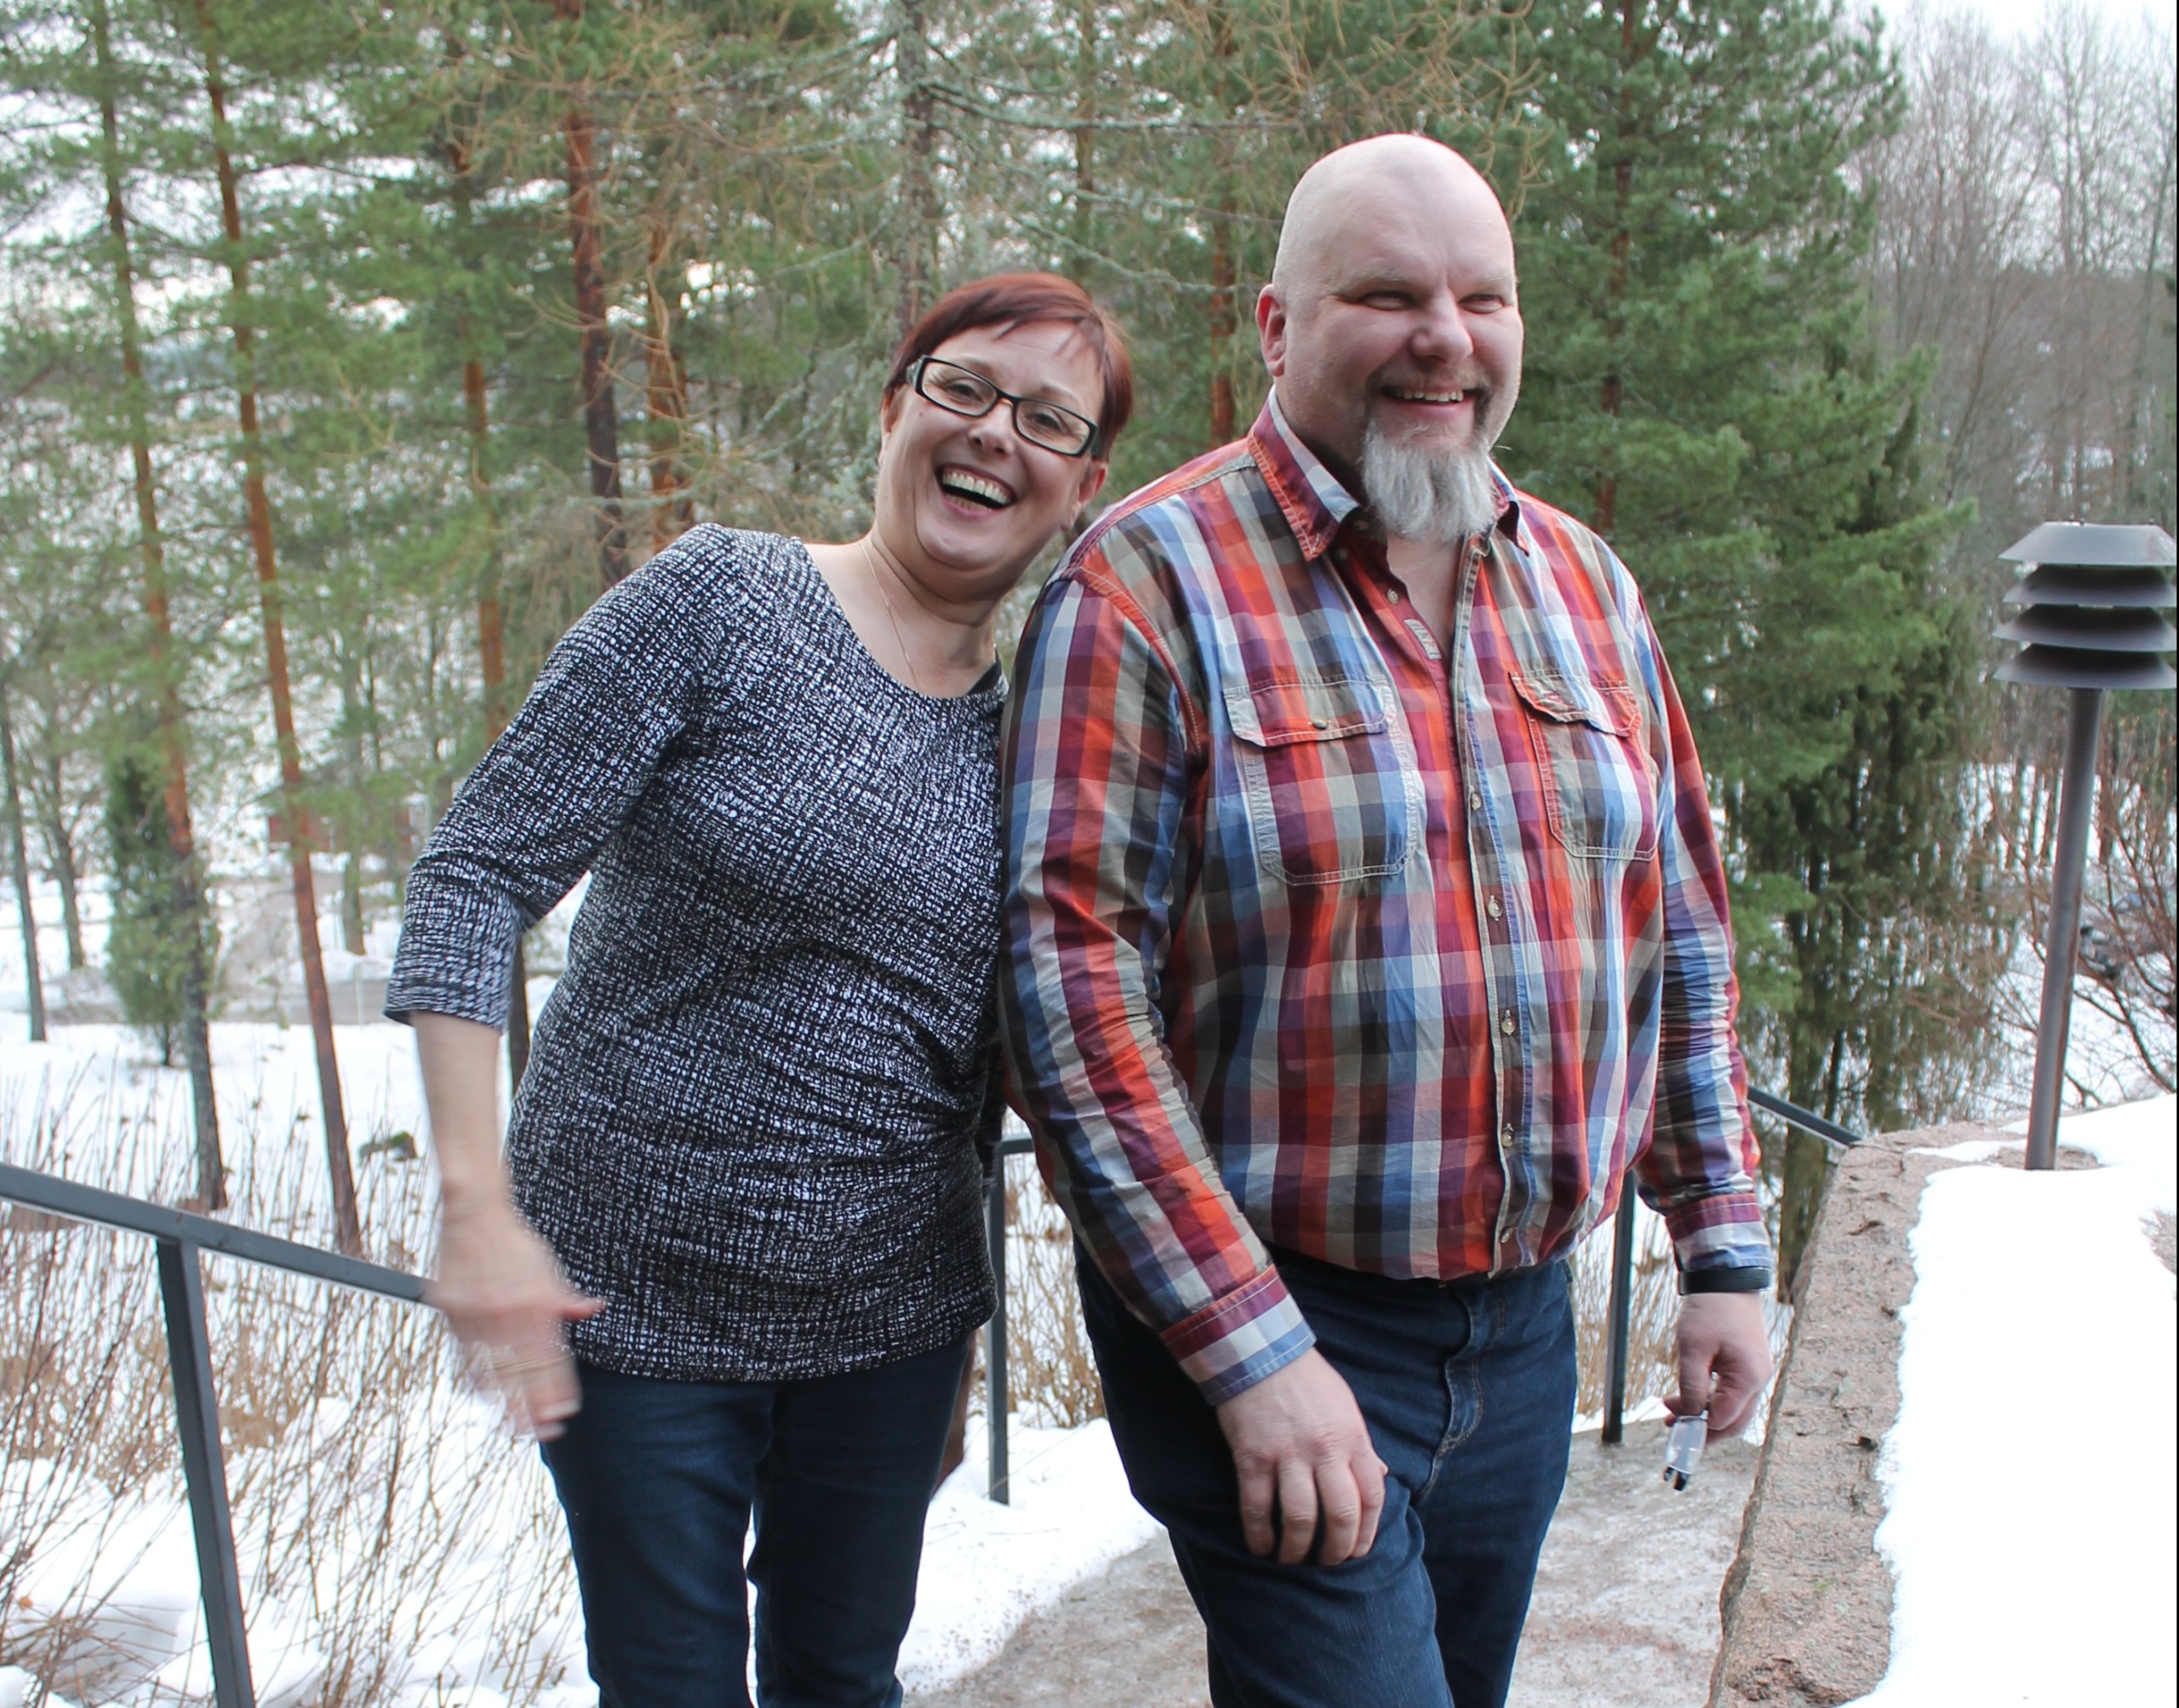 Kuvassa Kirsikka Joutsen ja Markku Nuutinen. Kirsikka nojaa Markkuun. Molemmat hymyilevät iloisesti kuvassa. Kuva on otettu ulkona.